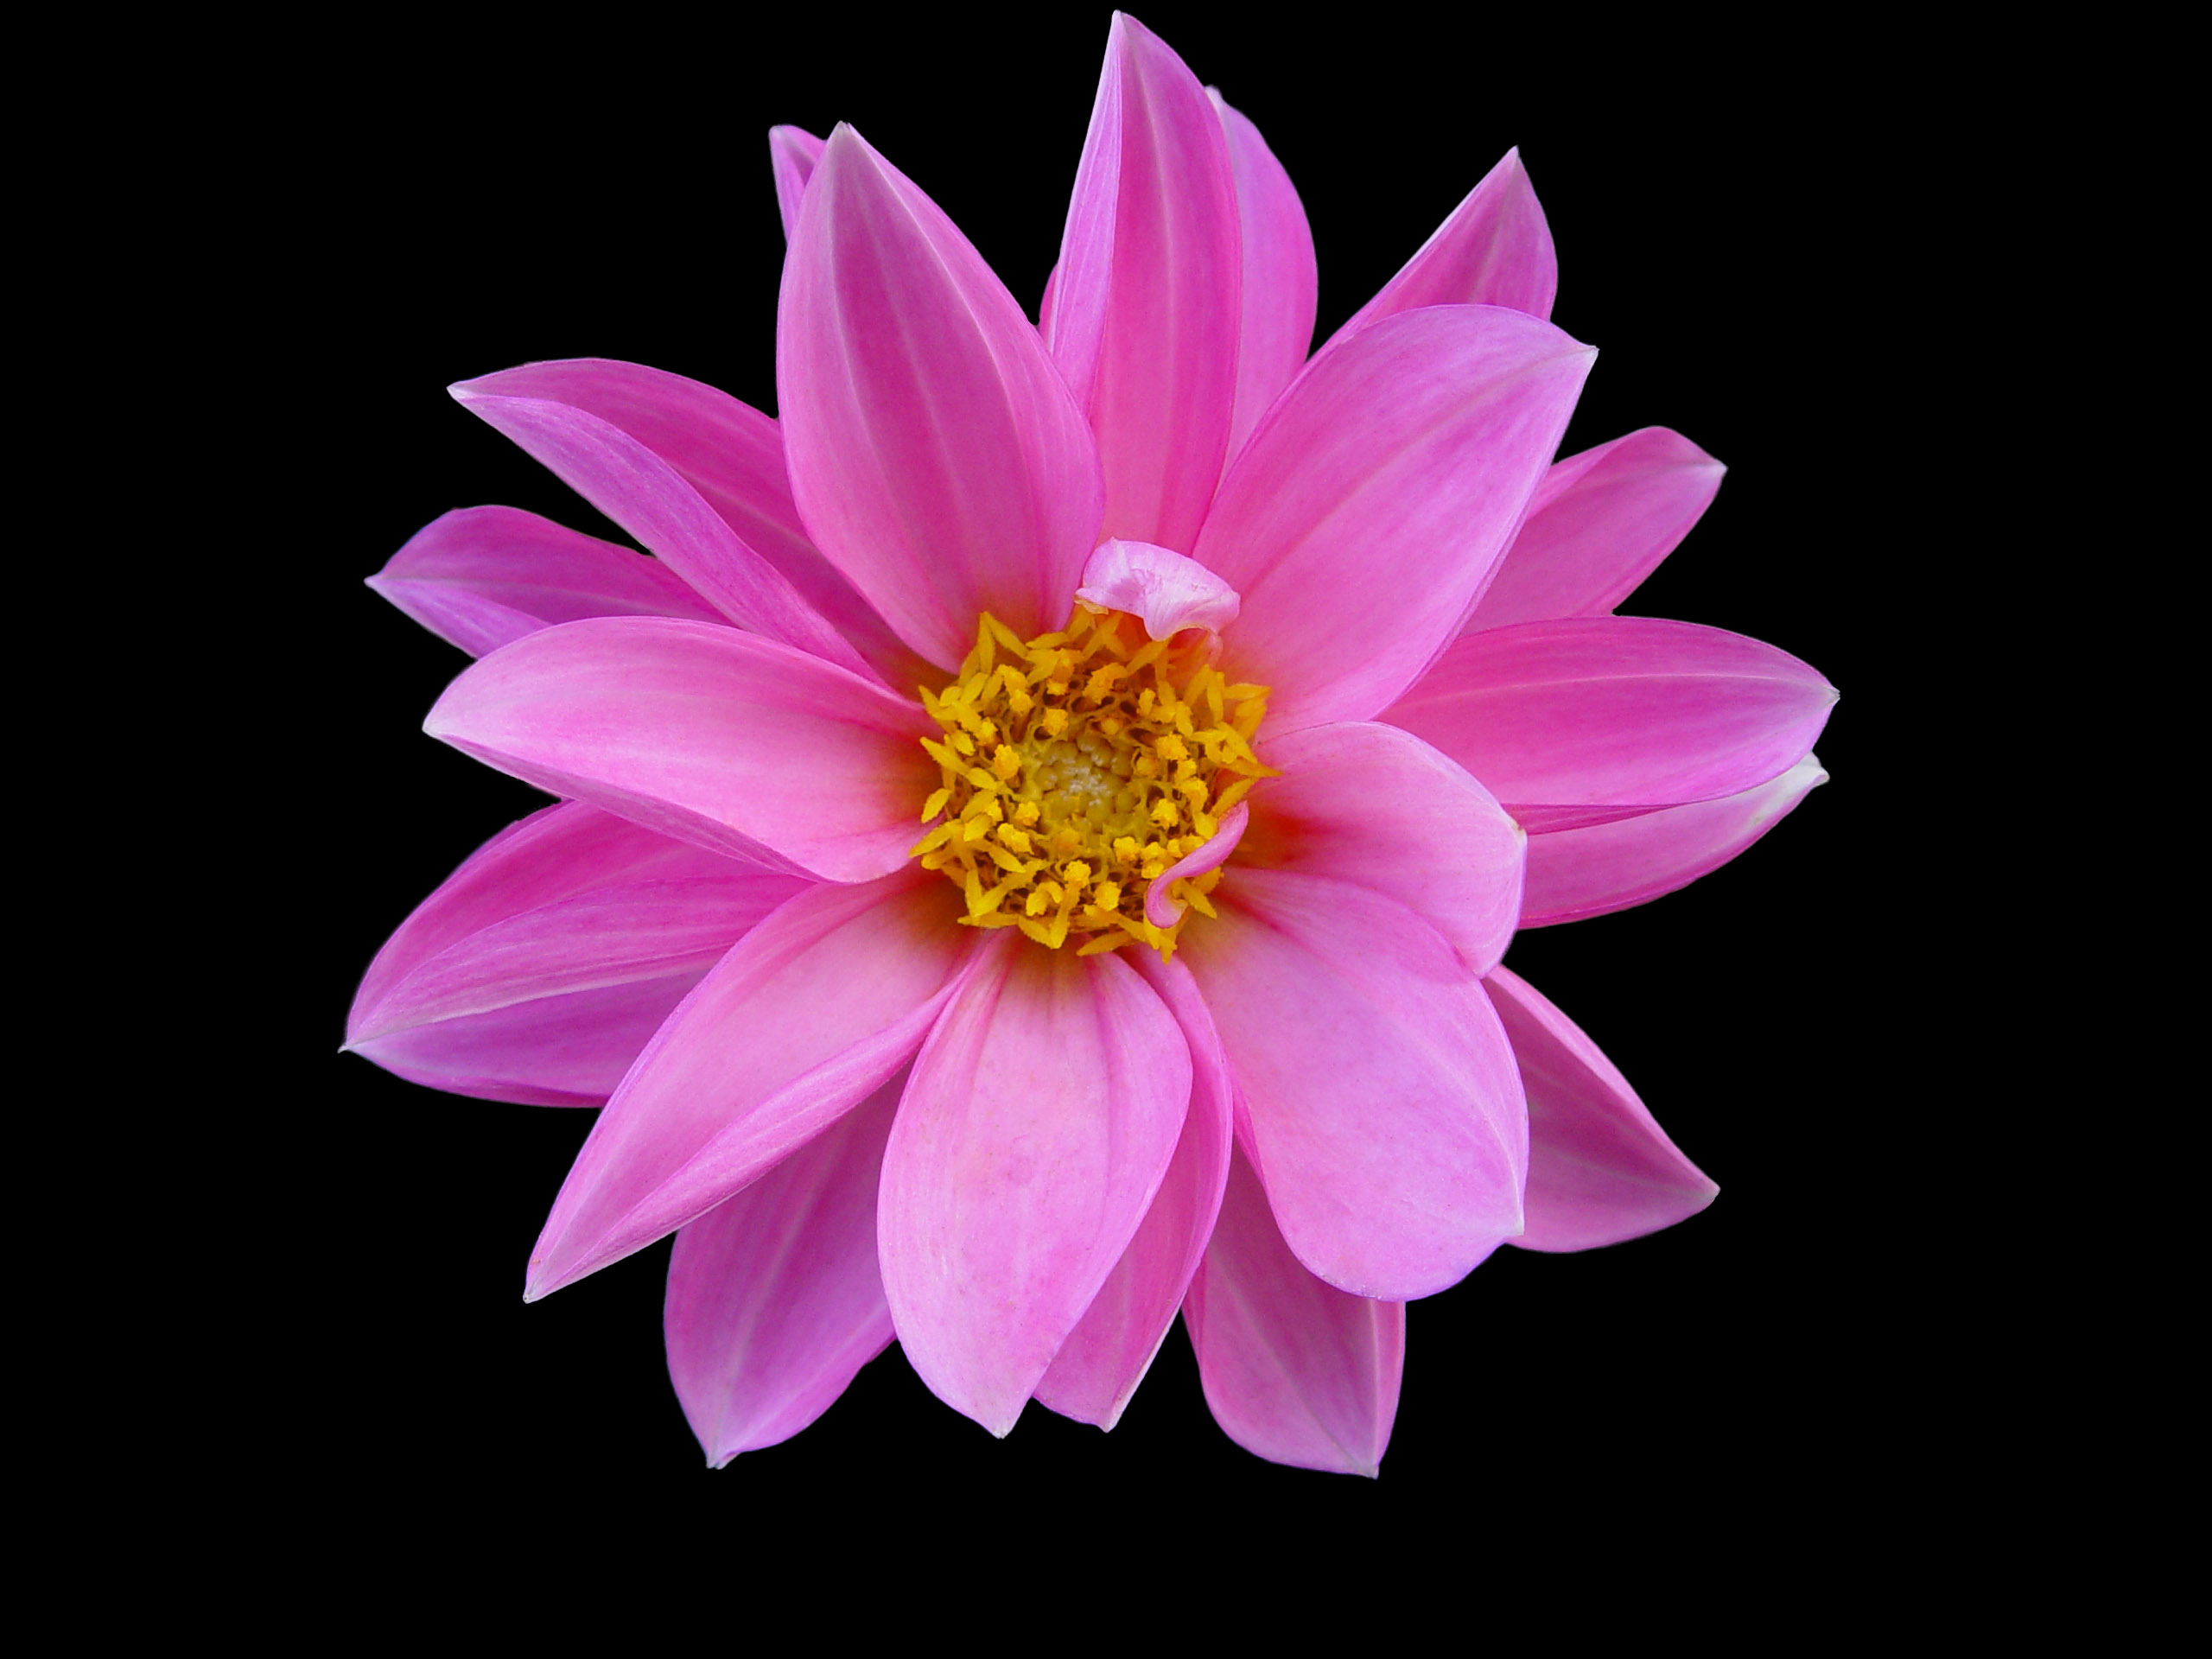 Pink Flower by Livinus on DeviantArt